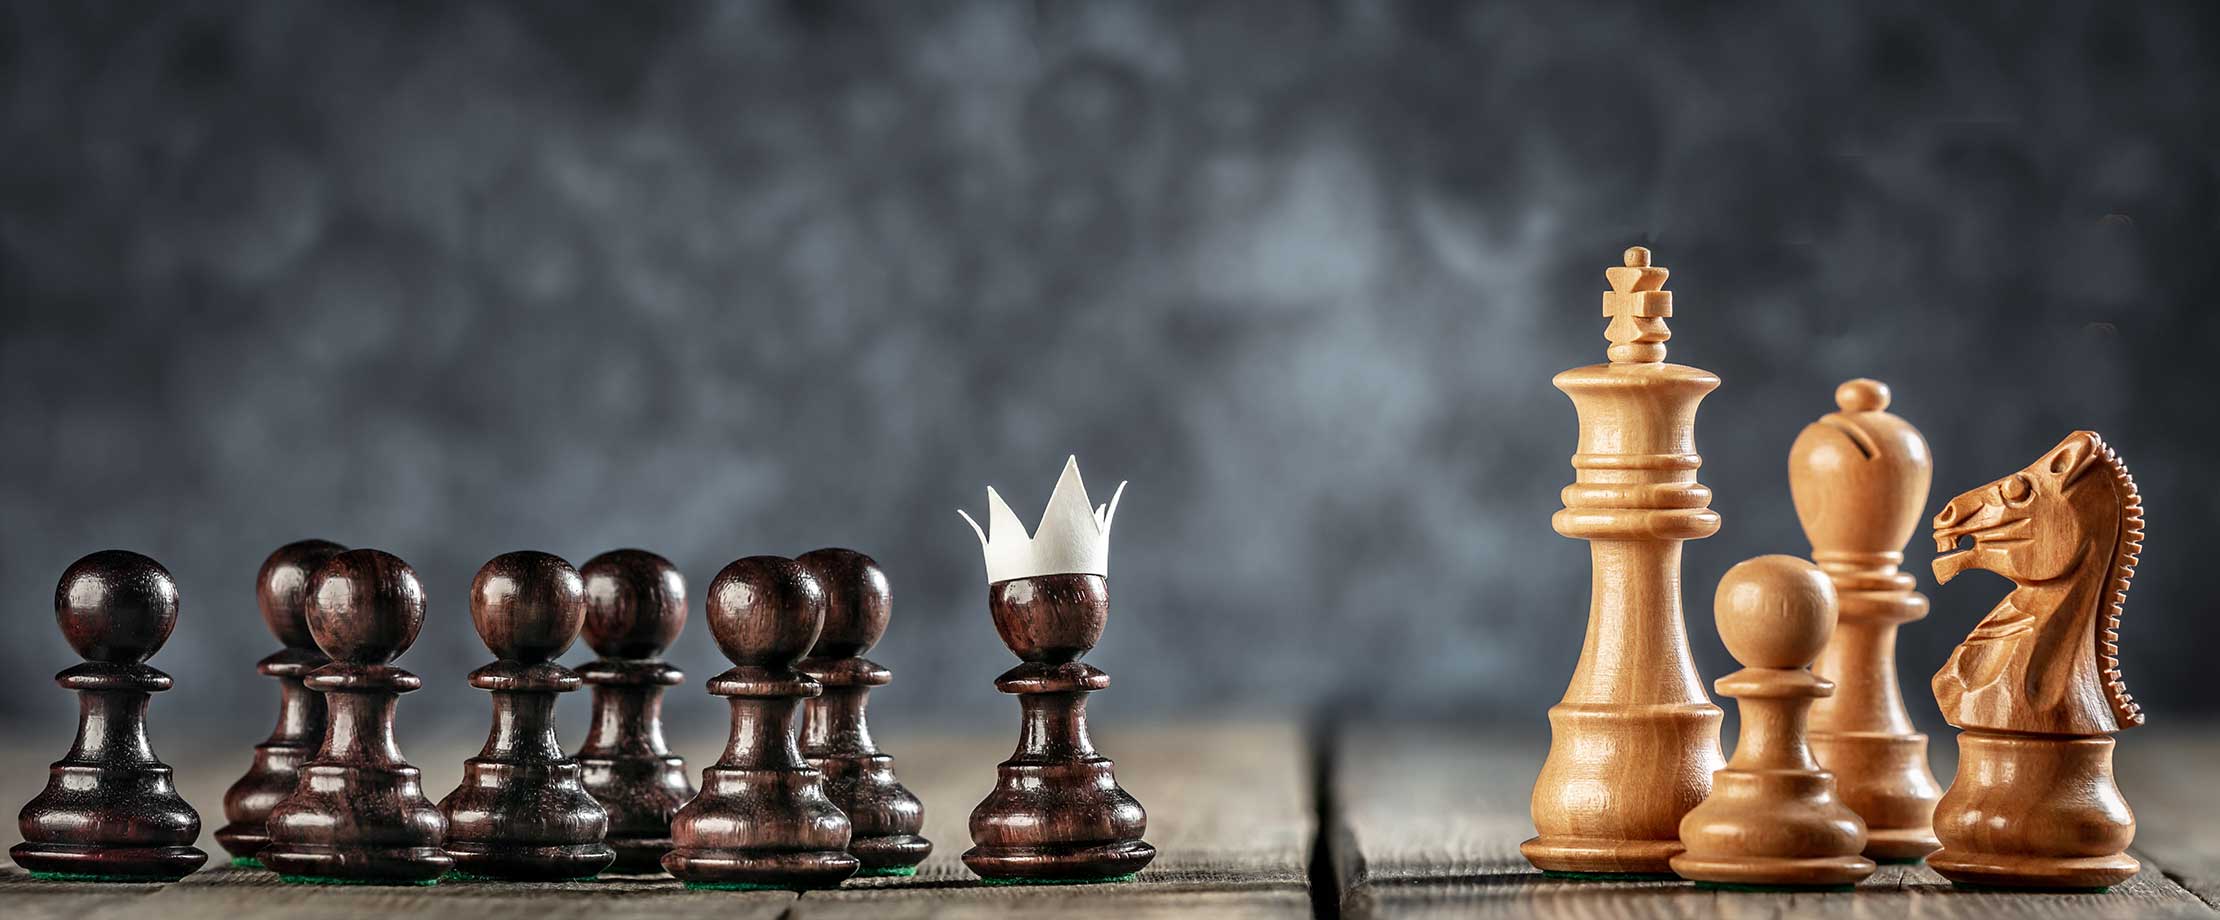 Schachfiguren stehen auf einem Tisch vor schwarzem Hintergrund. Die weißen Figuren rechts sind der König, ein Läufer, Ein Pferd und ein Bauer. Die schwarzen Figuren links sind alle Bauern, der vorderste von ihnen trägt eine Papierkrone.